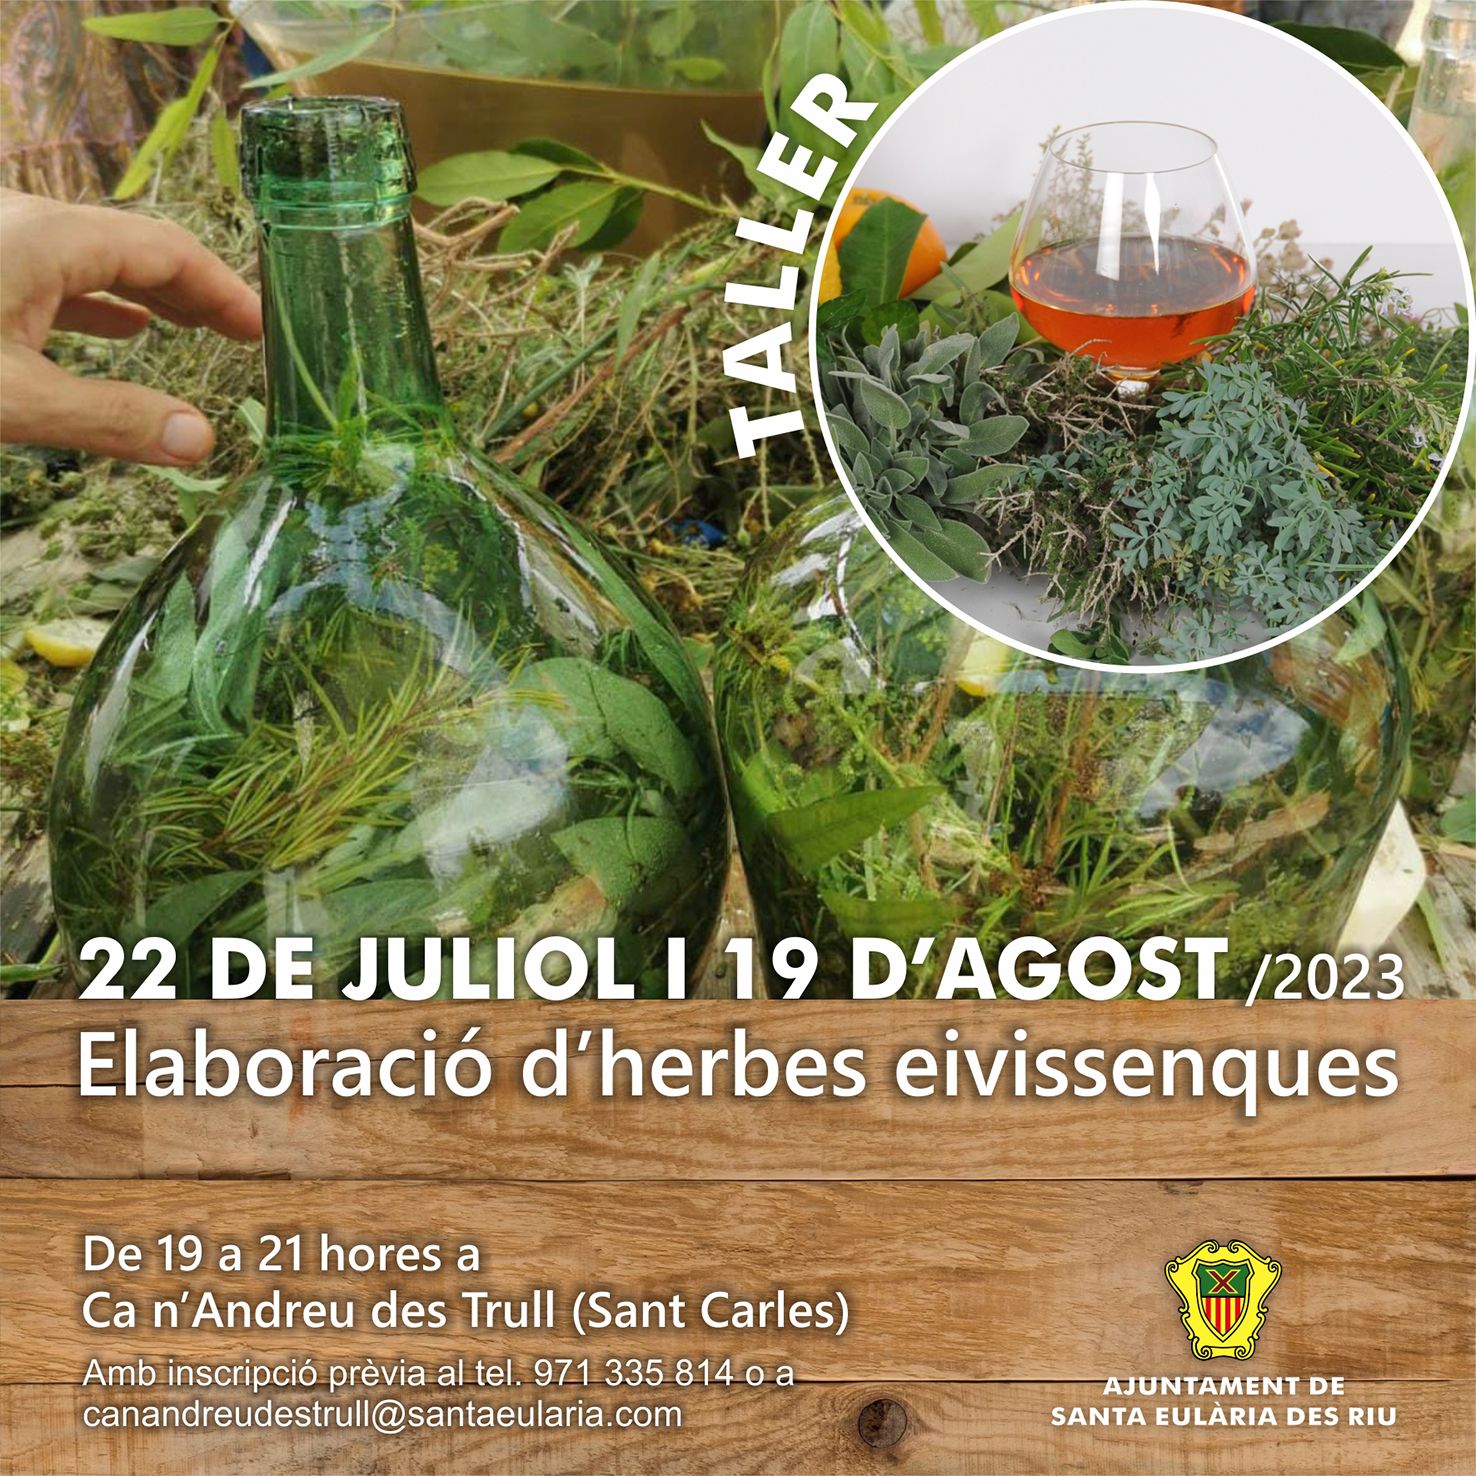 La casa pagesa municipal de Ca n’Andreu des Trull acull els dies 22 de juliol i 19 d'agost sengles tallers per a l'elaboració d'herbes eivissenques